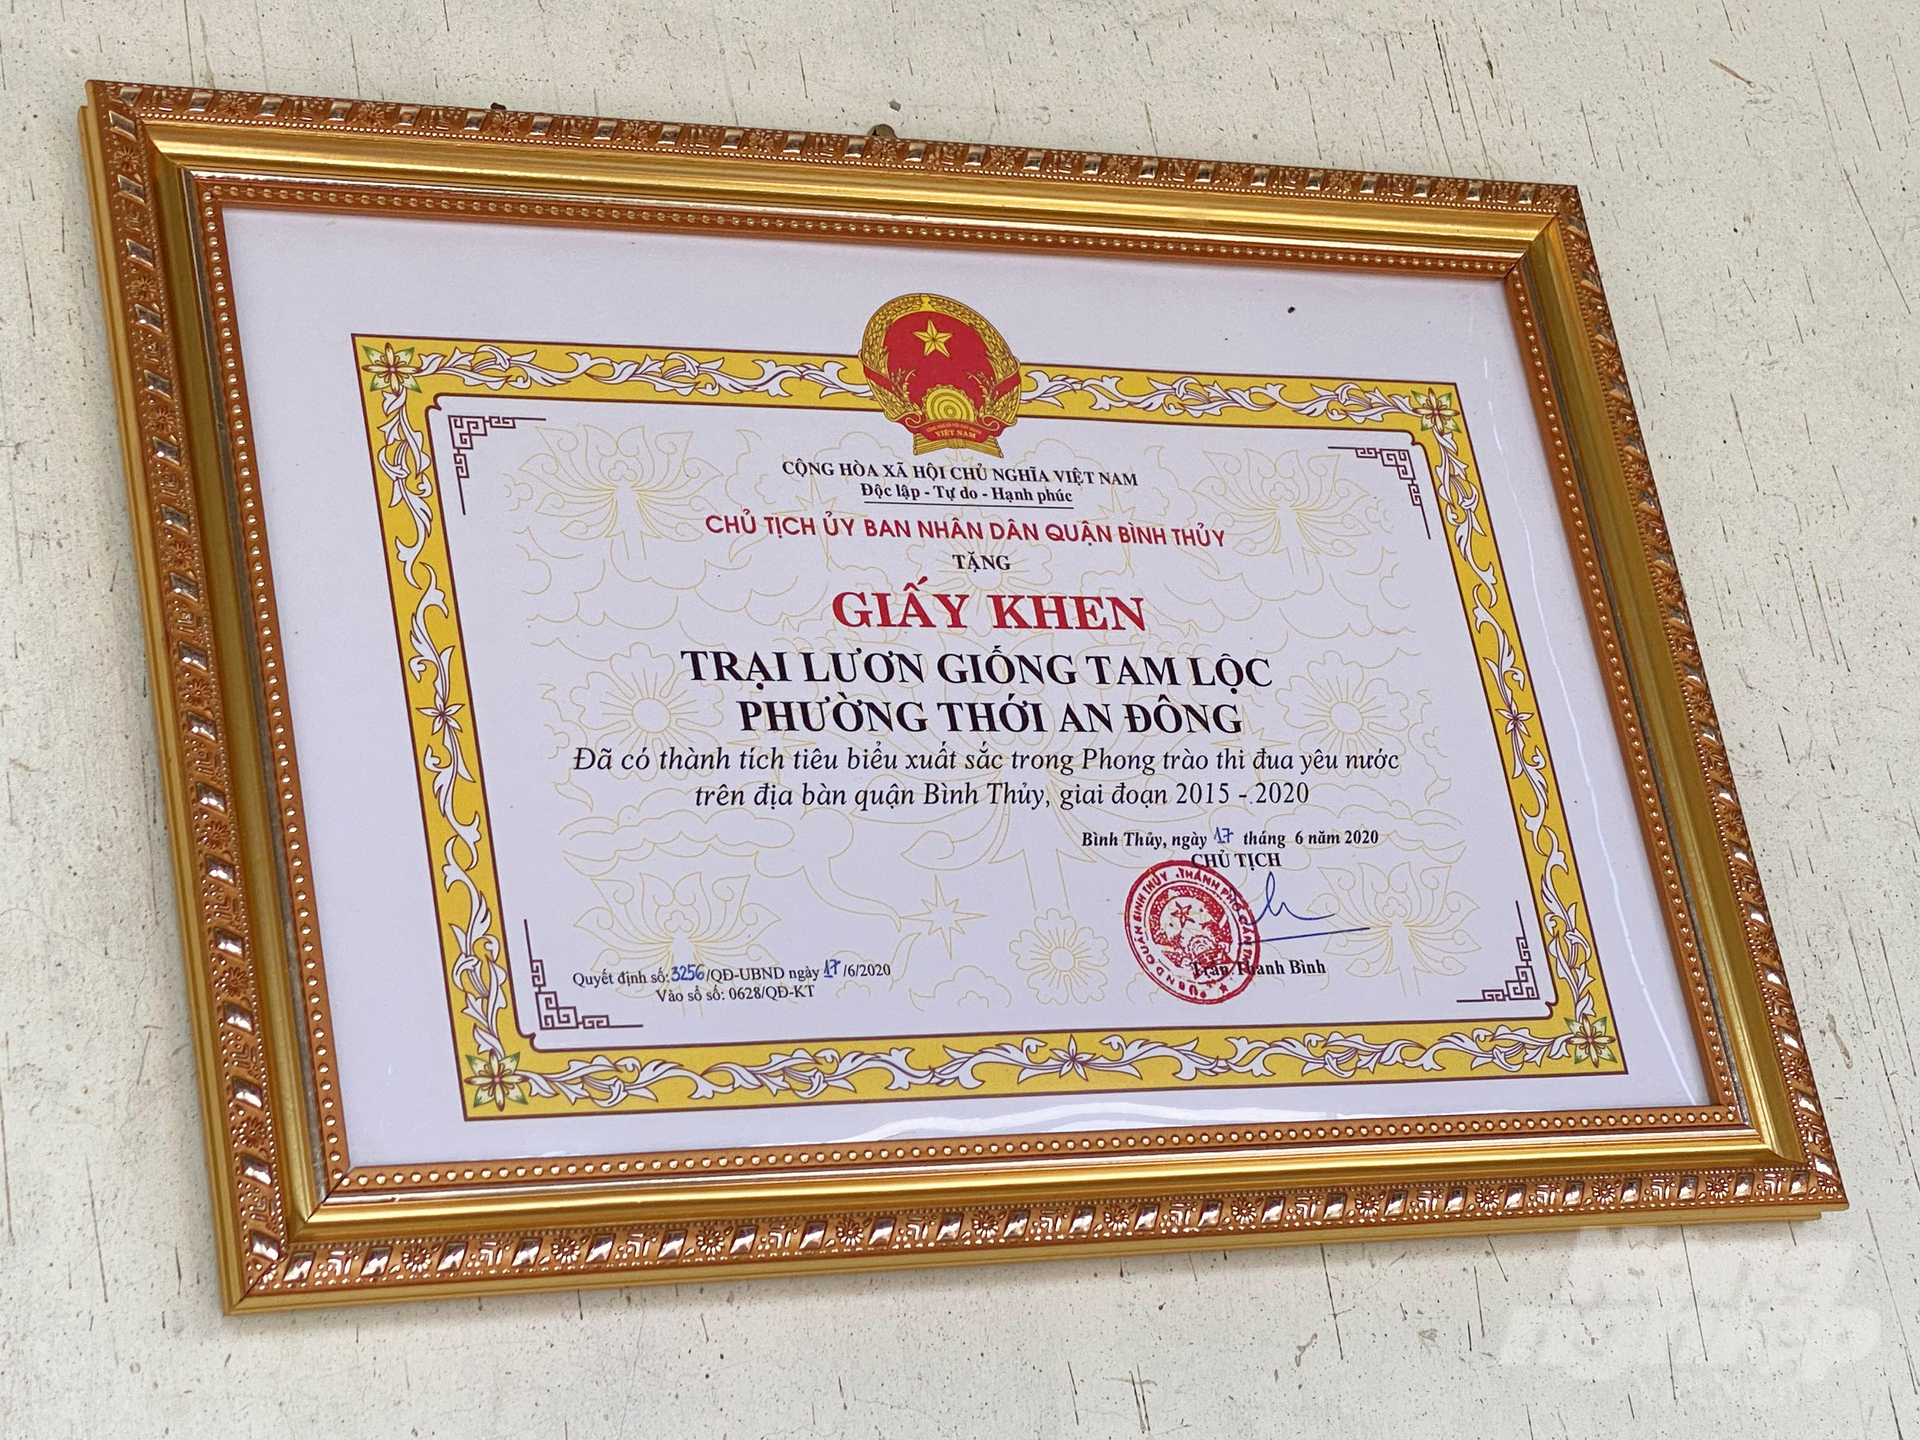 Sau nhiều năm thành công với con lươn và đóng góp cho nông nghiệp địa phương, trại lươn giống Tam Lộc của anh Lộc đã được nhận giấy khen của UBND quận Bình Thủy.